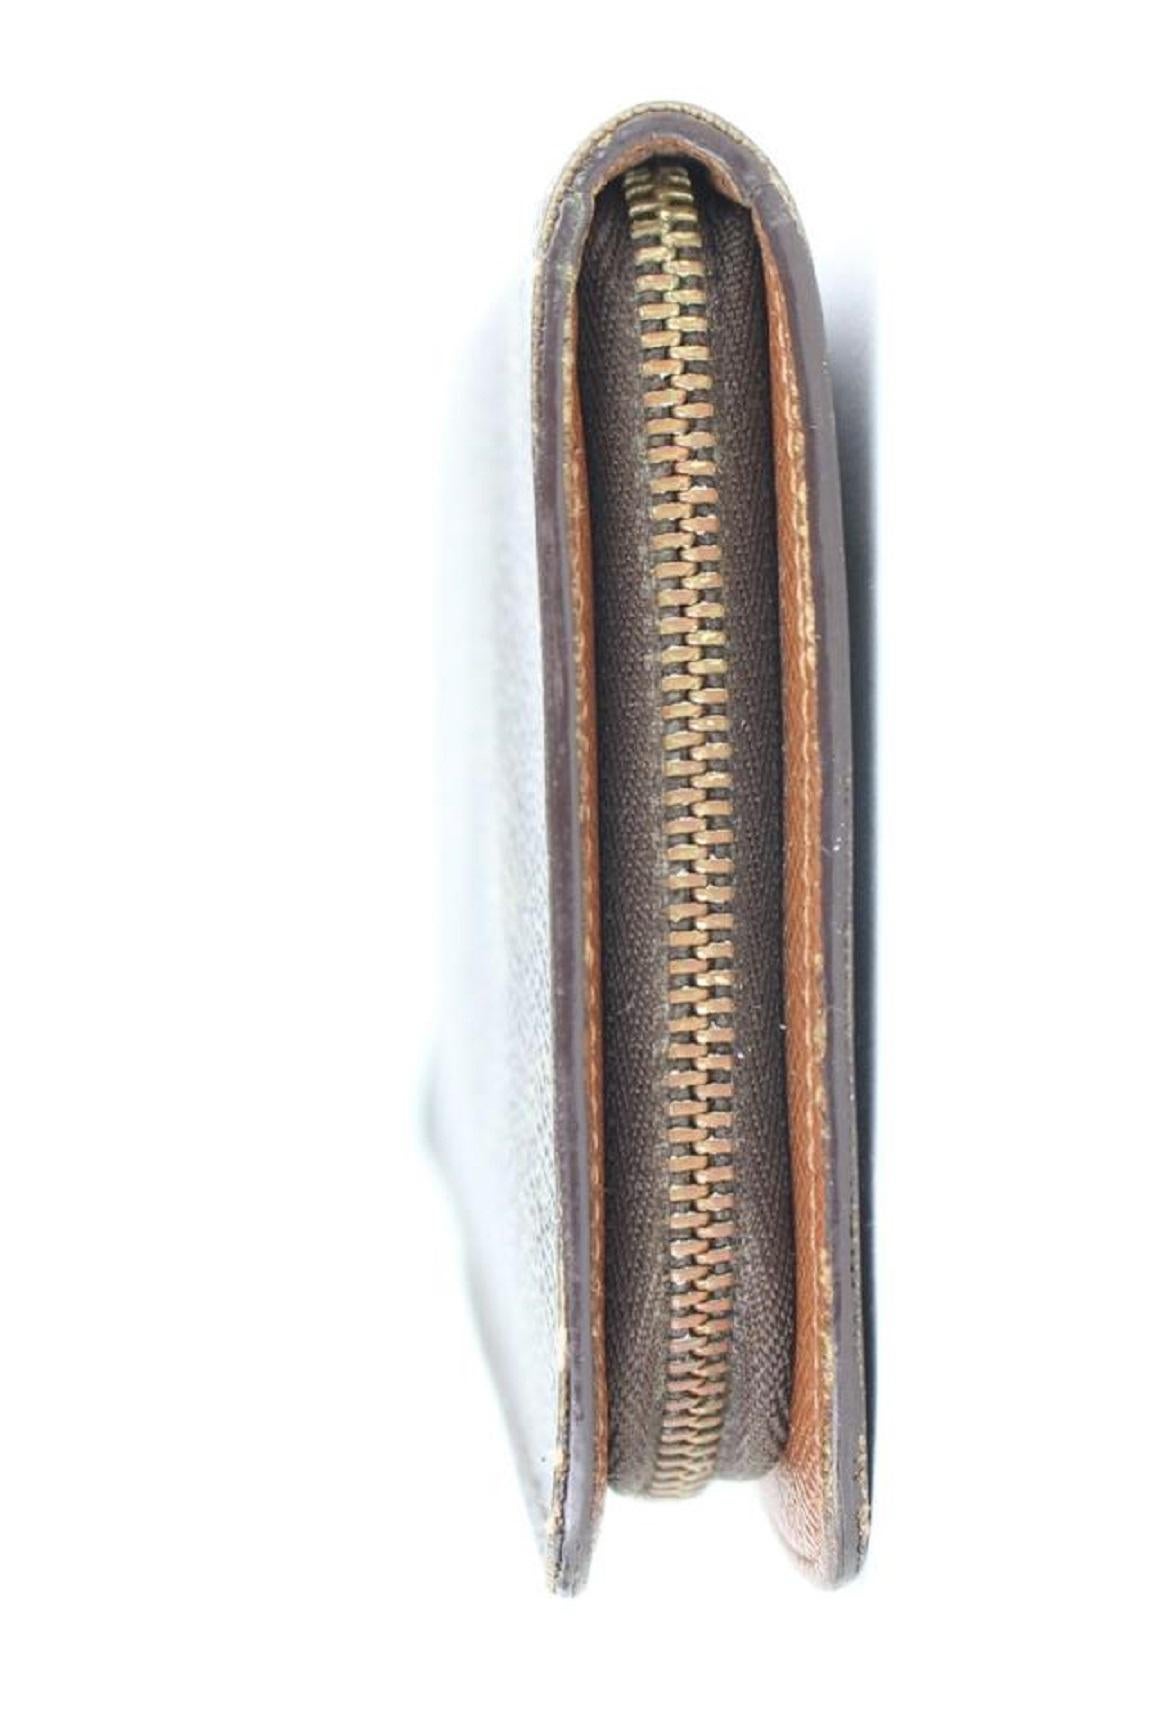 Louis Vuitton Long Wallet Monogram Zippy 3lj0111 Brown Coated Canvas Wristlet For Sale 2